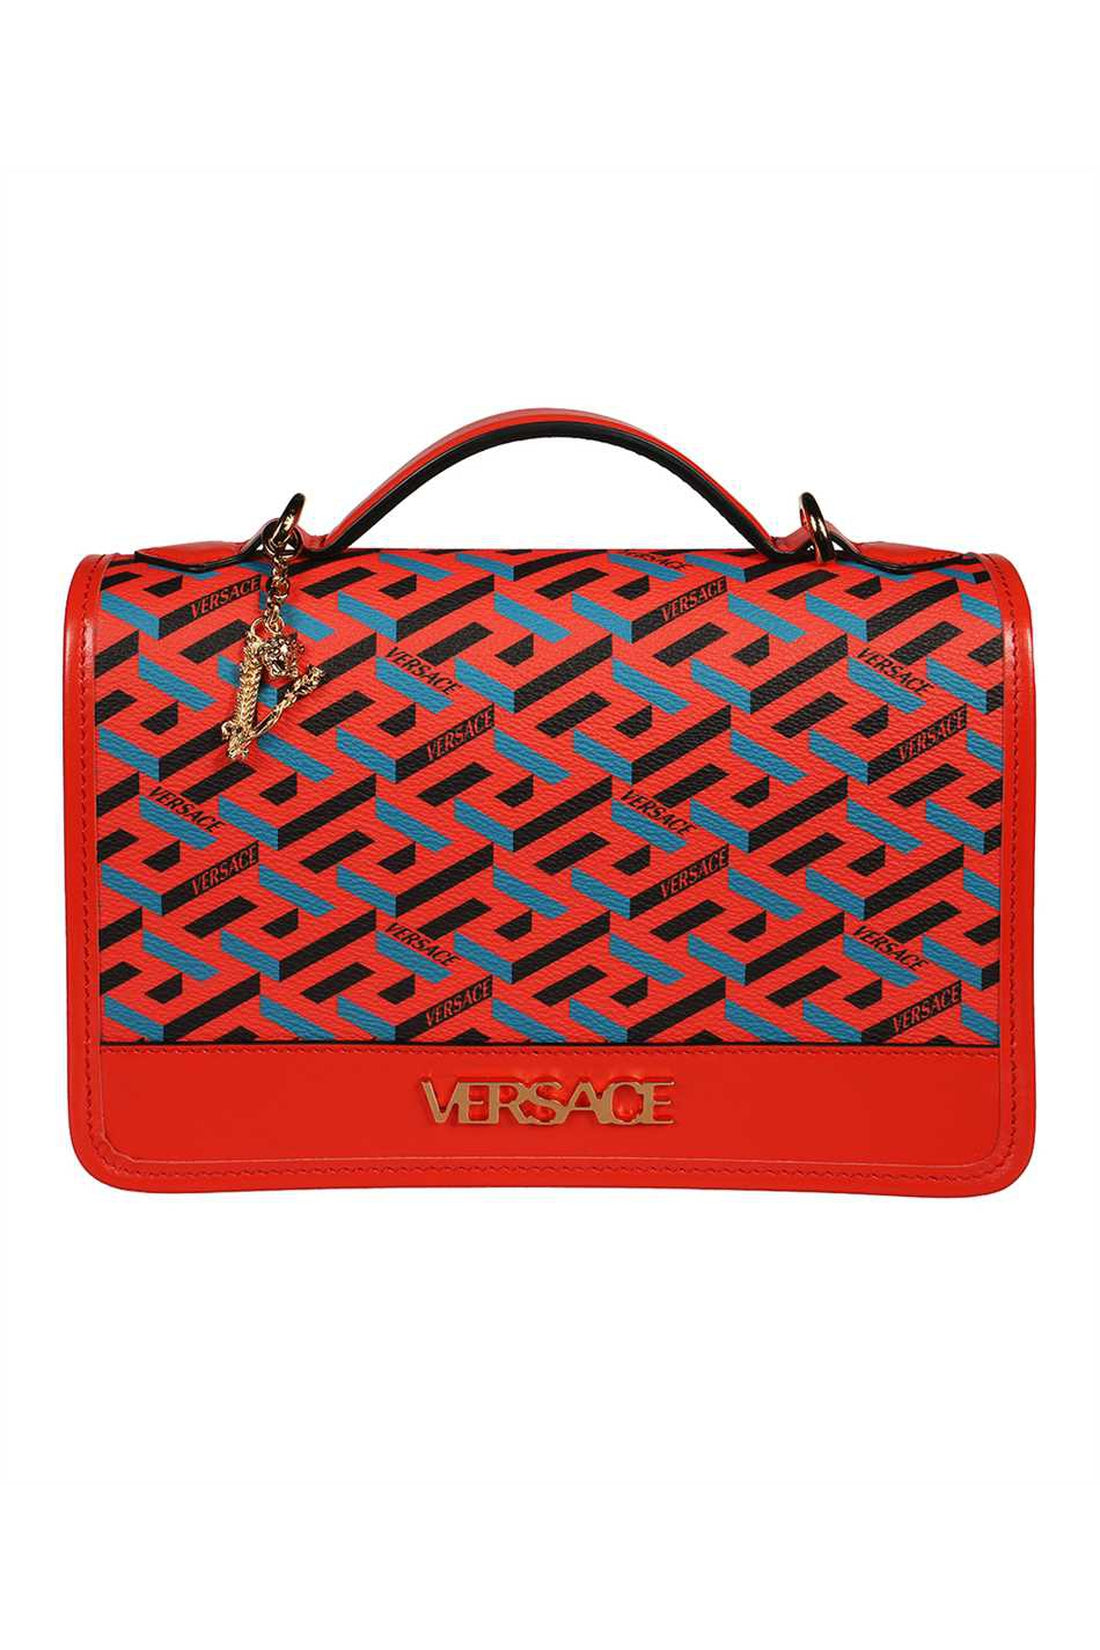 Versace-OUTLET-SALE-La Greca Signature bag-ARCHIVIST